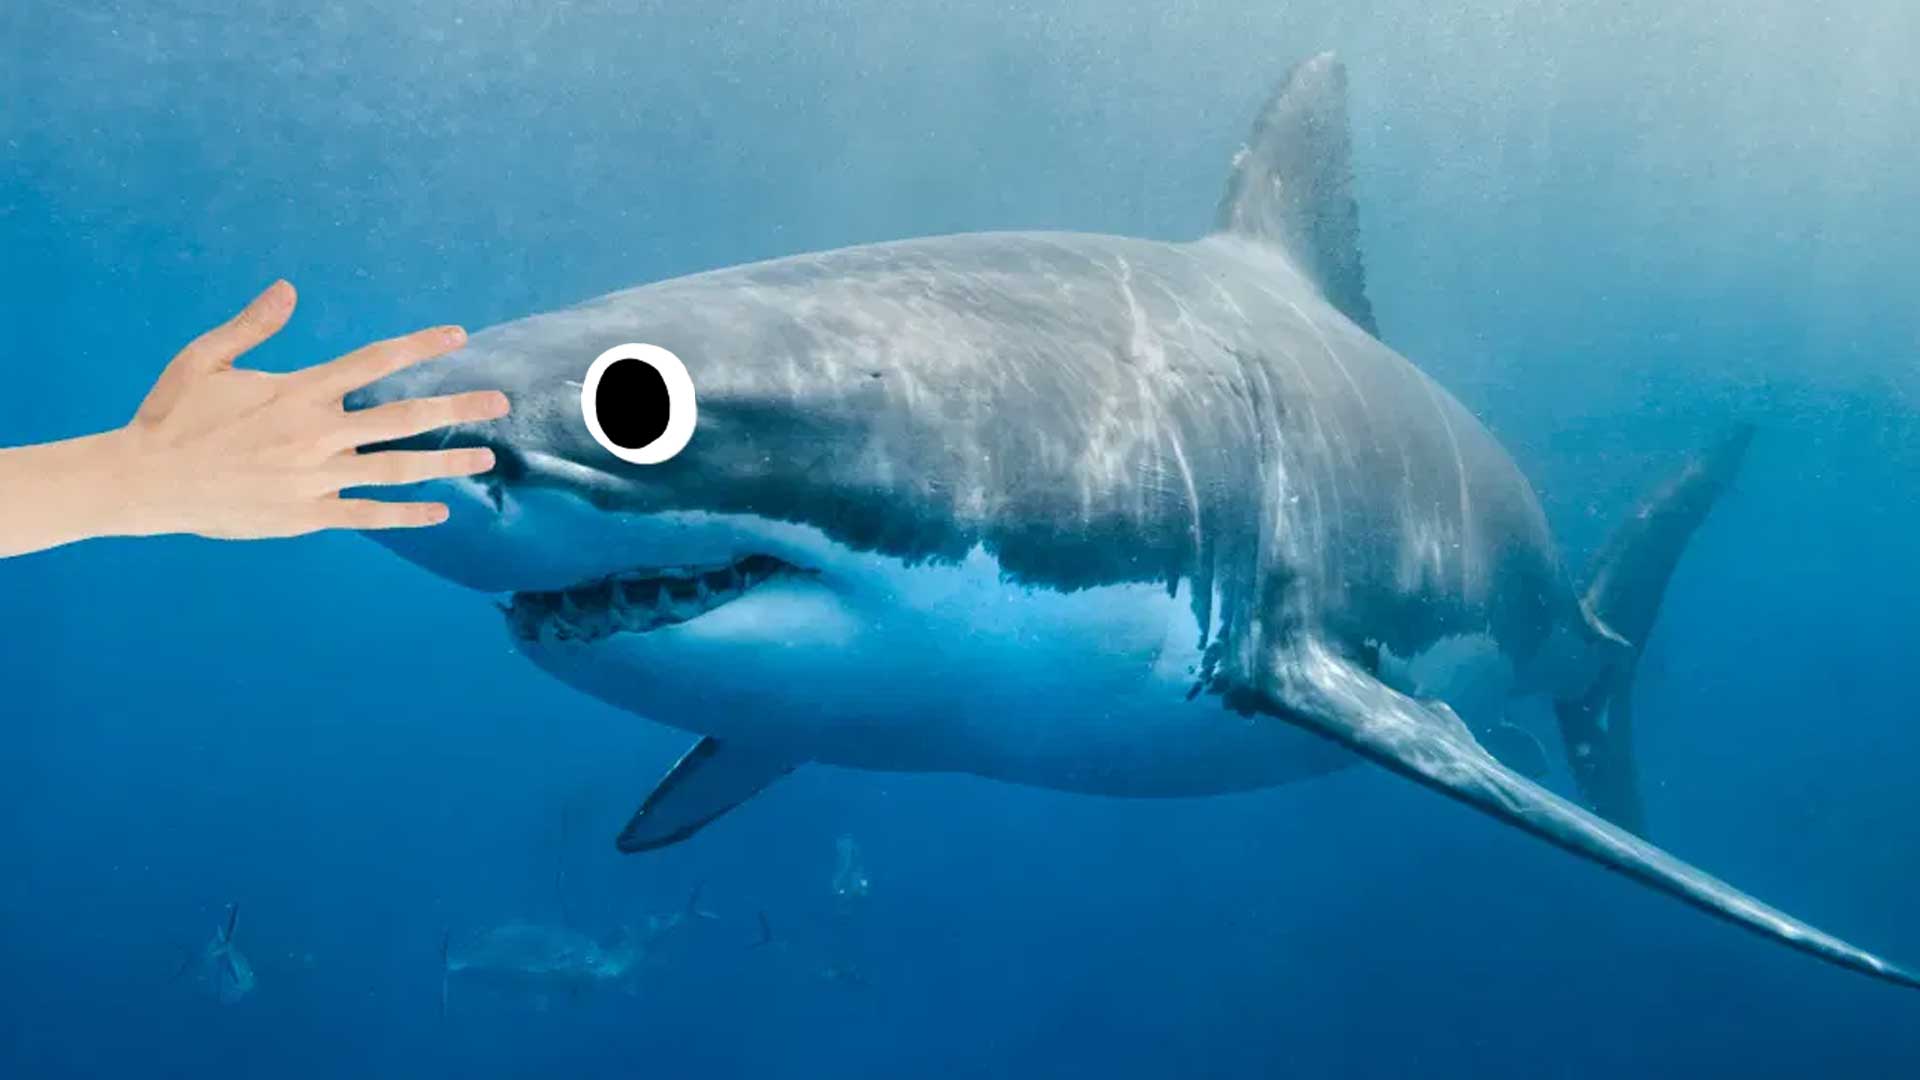 A hand touching a shark's nose